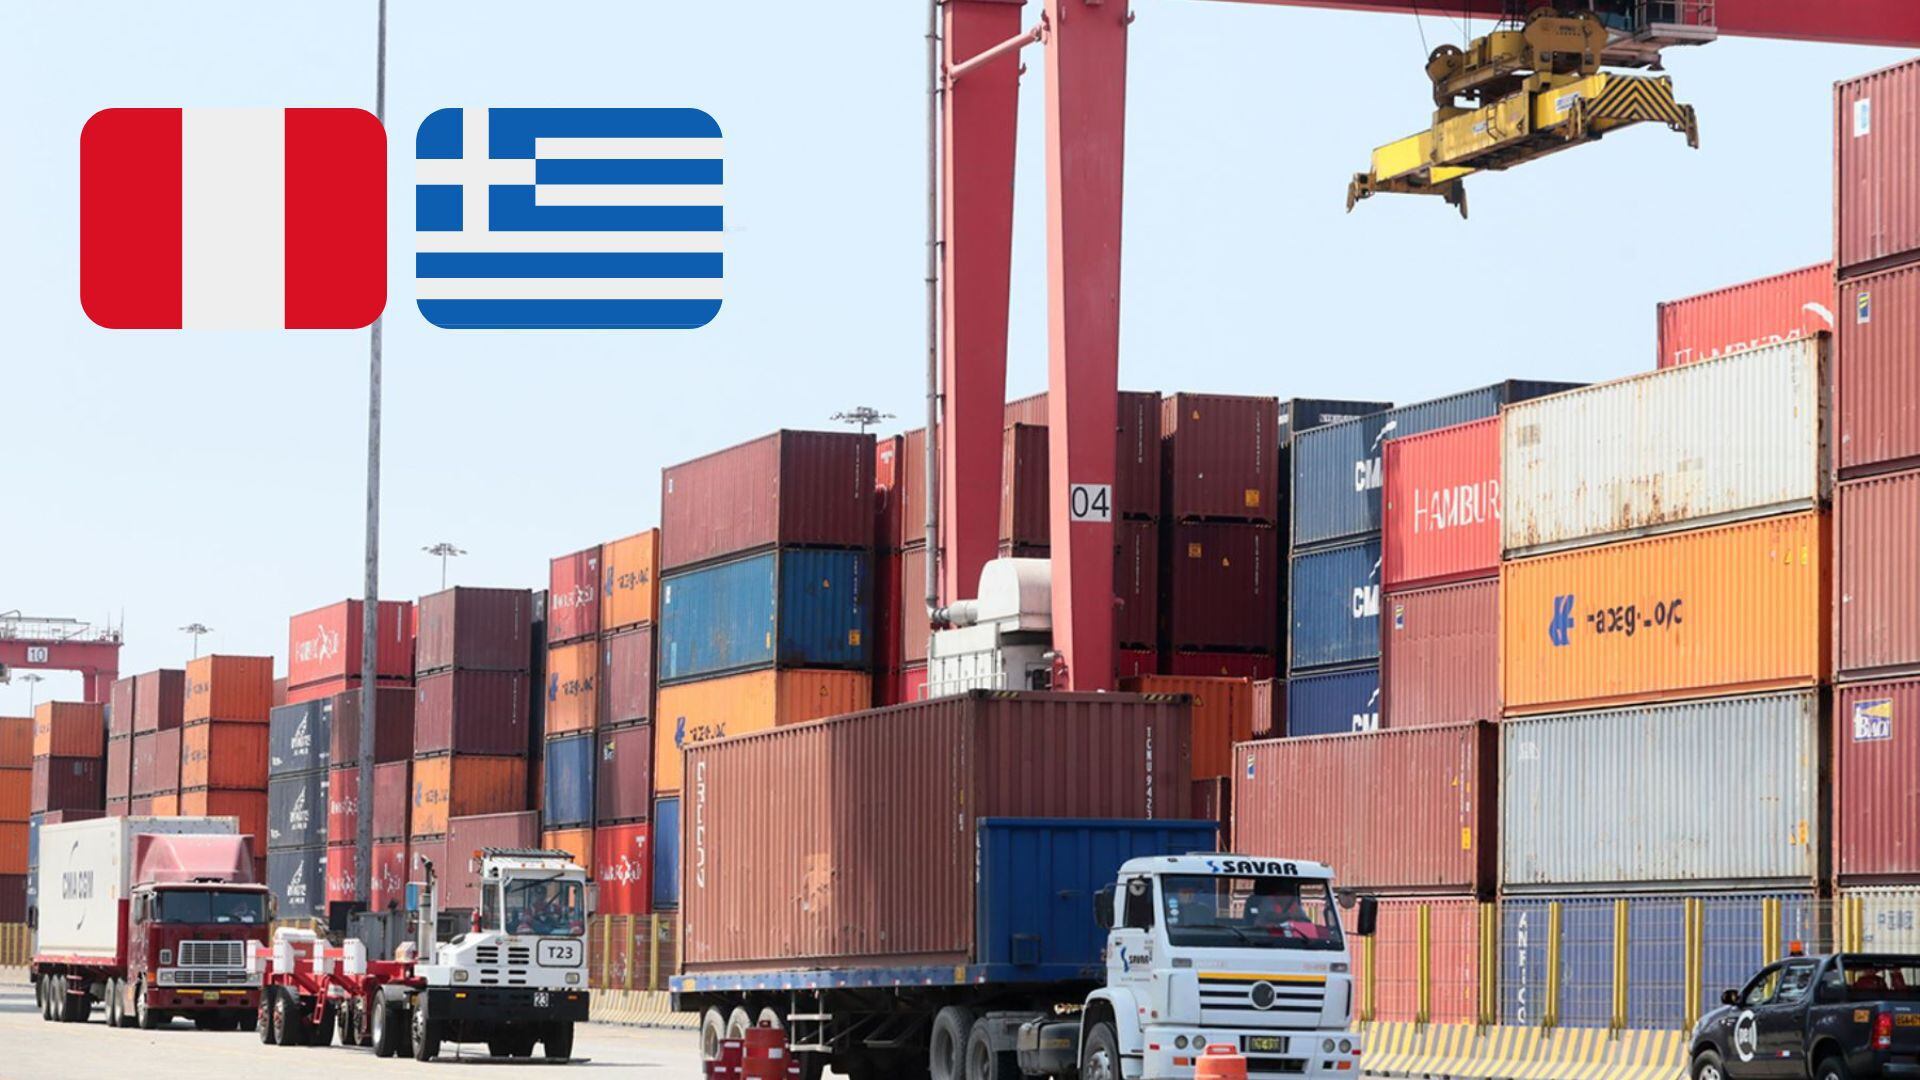 Grecia y Perú relaciones comerciales